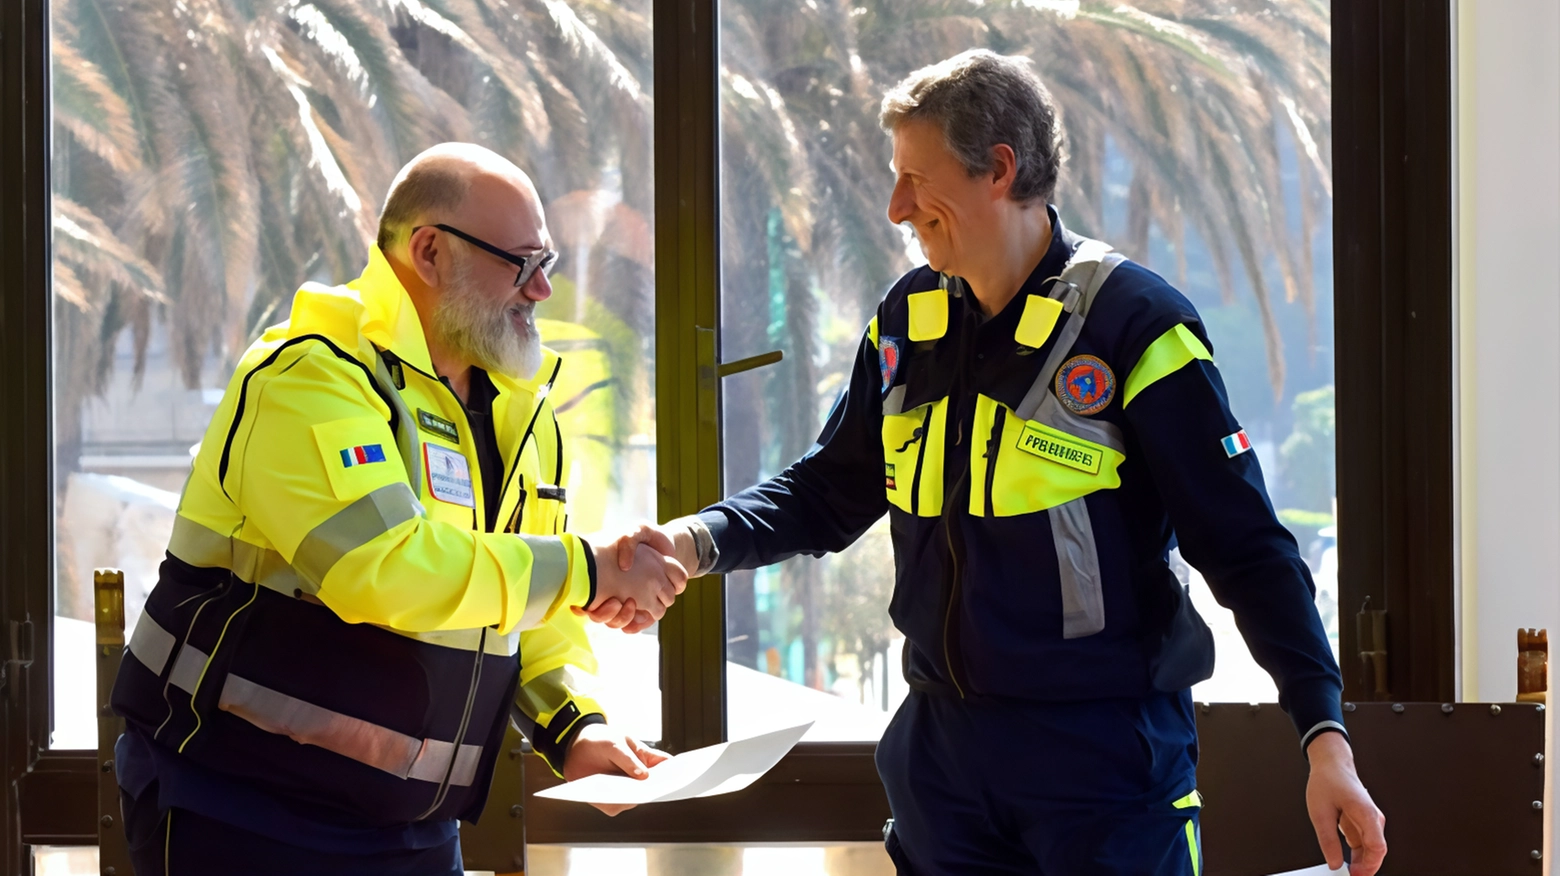 A Moneglia è stato siglato il patto di gemellaggio tra Croce Azzurra e Protezione Civile di Legnano, per intensificare la collaborazione nella gestione delle emergenze. Sindaci e autorità locali presenti alla firma.